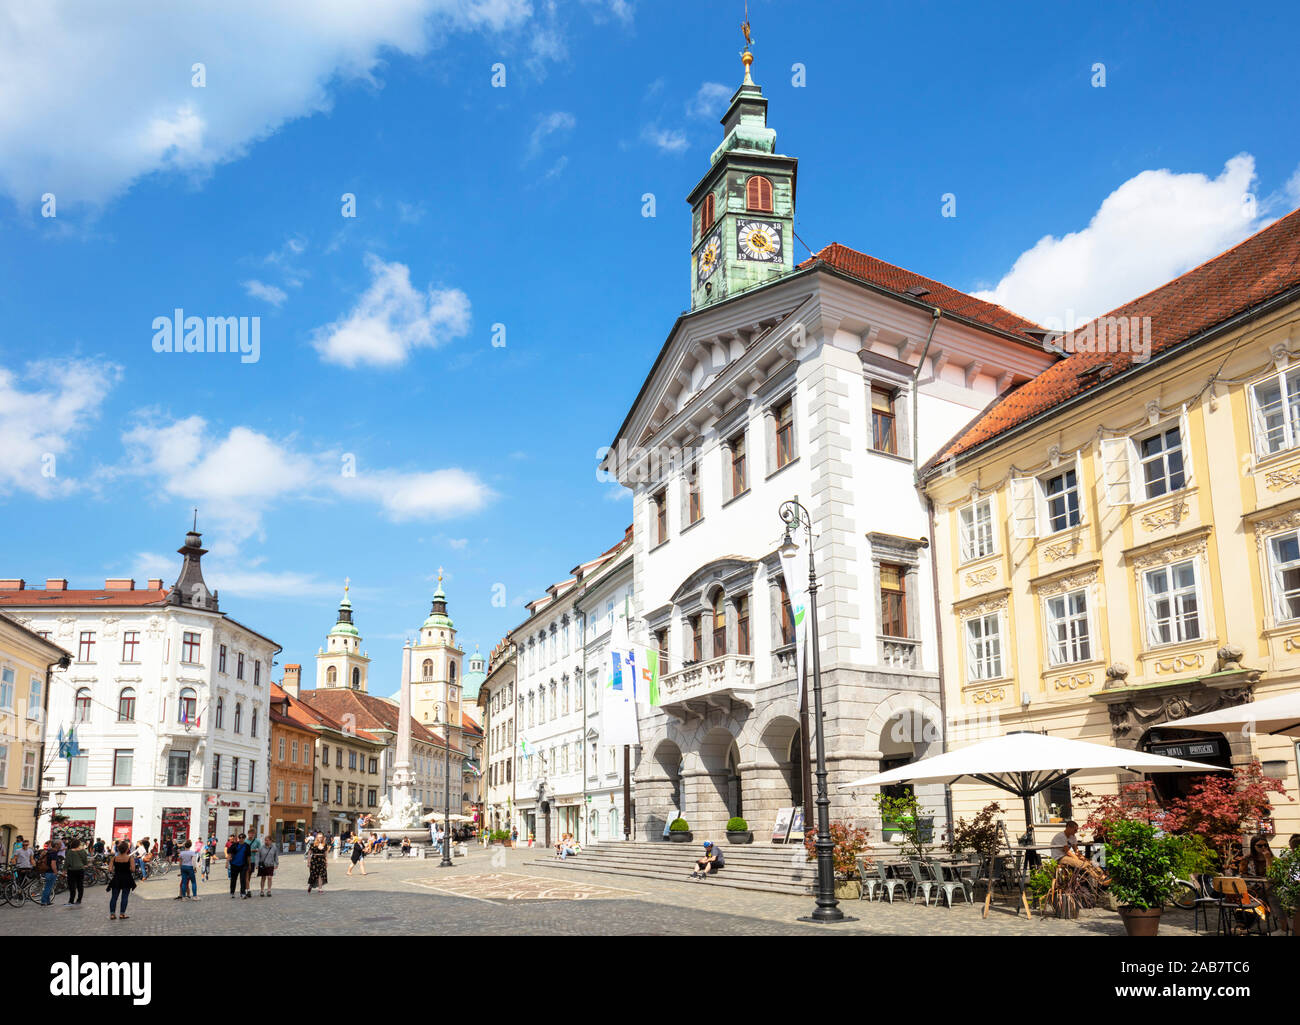 Ljubljana Town Square in front of the Ljubljana Town Hall (Stritarjeva ulica), Old Town, Ljubljana, Slovenia, Europe Stock Photo